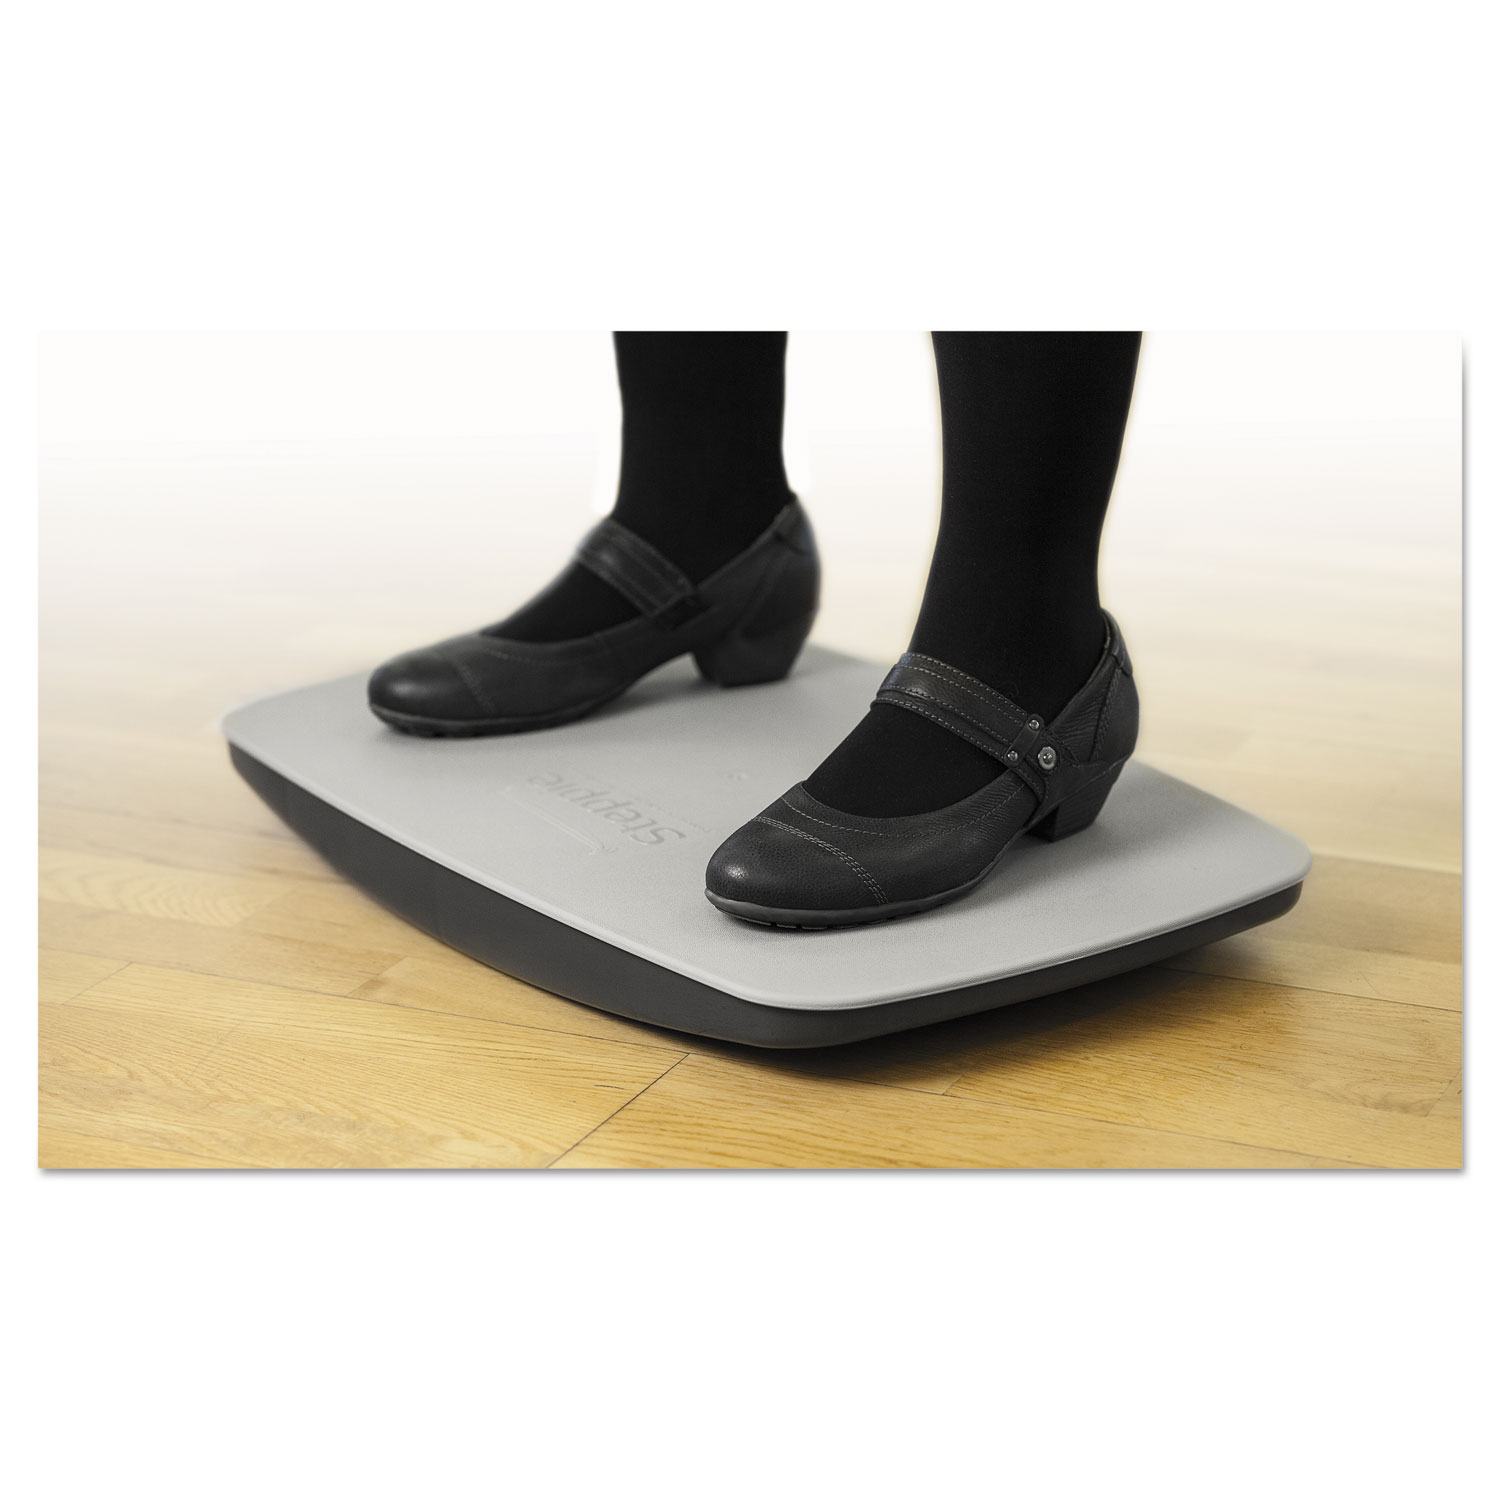 Steppie Balance Board, 22 1/2w x 14 1/2d x 2 1/8h, Two-Tone Gray